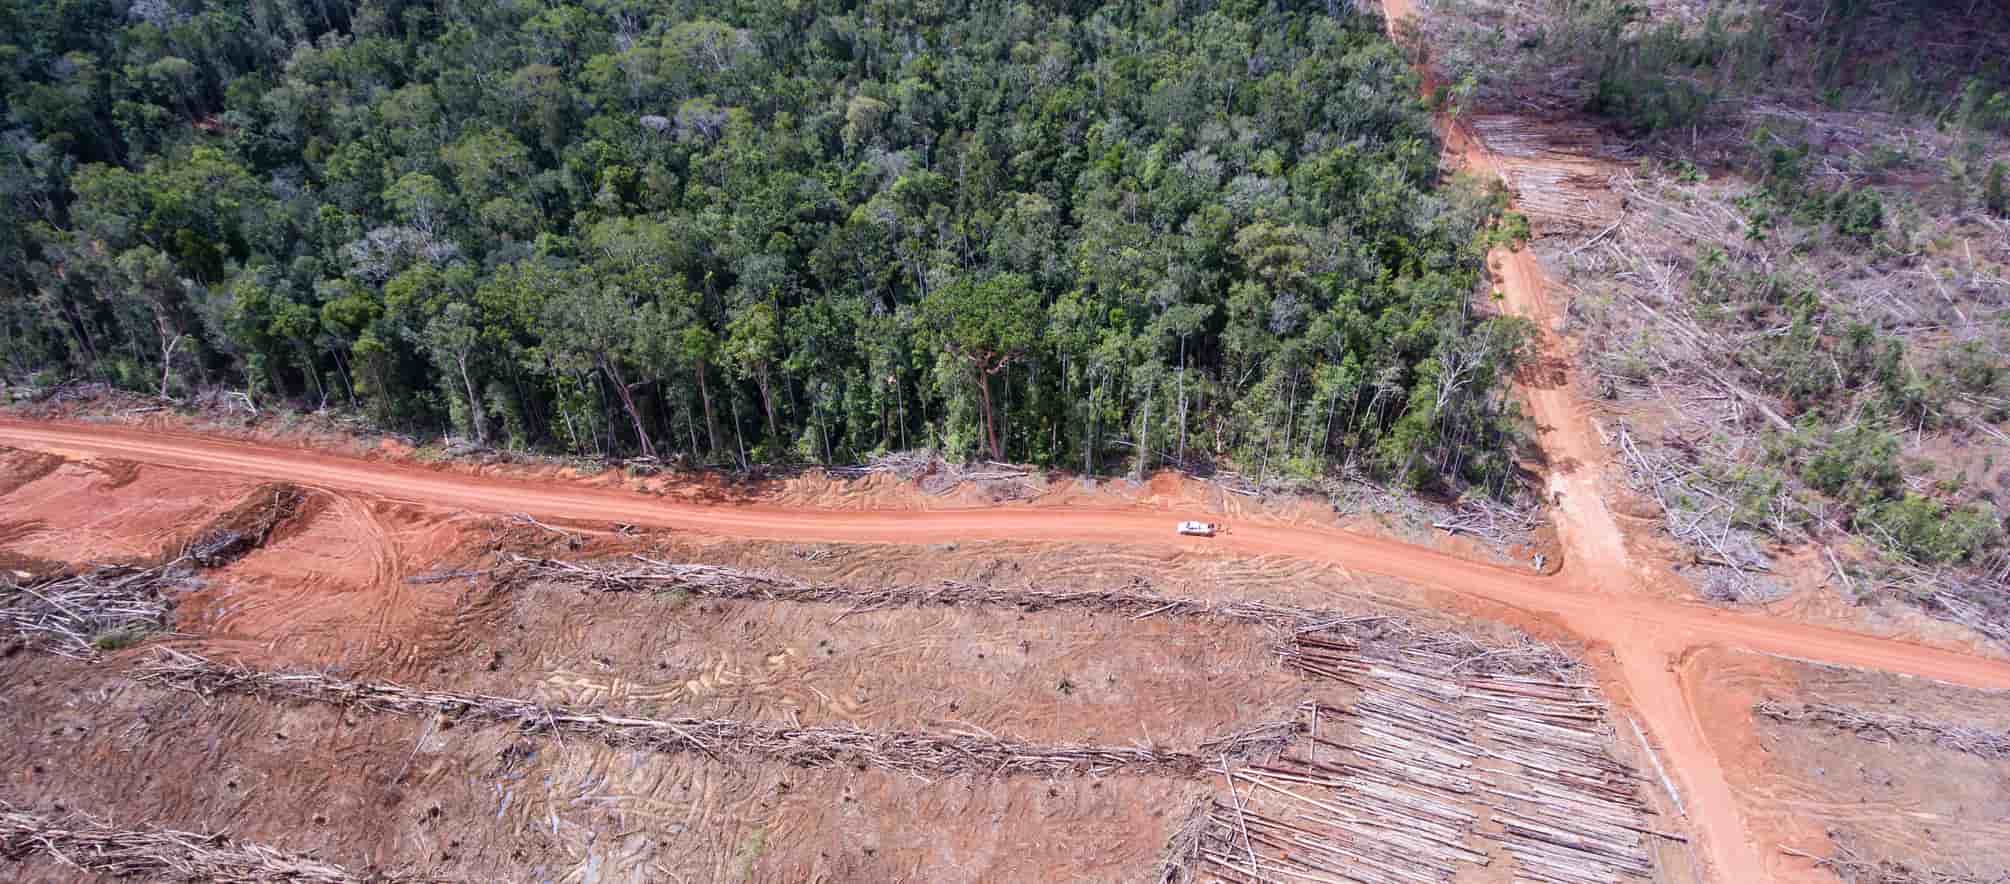 You are currently viewing Rettet den Regenwald e.V. Pressemitteilung: Palmöl- und Holz-Konzern Korindo will Umweltschützer mundtot machen